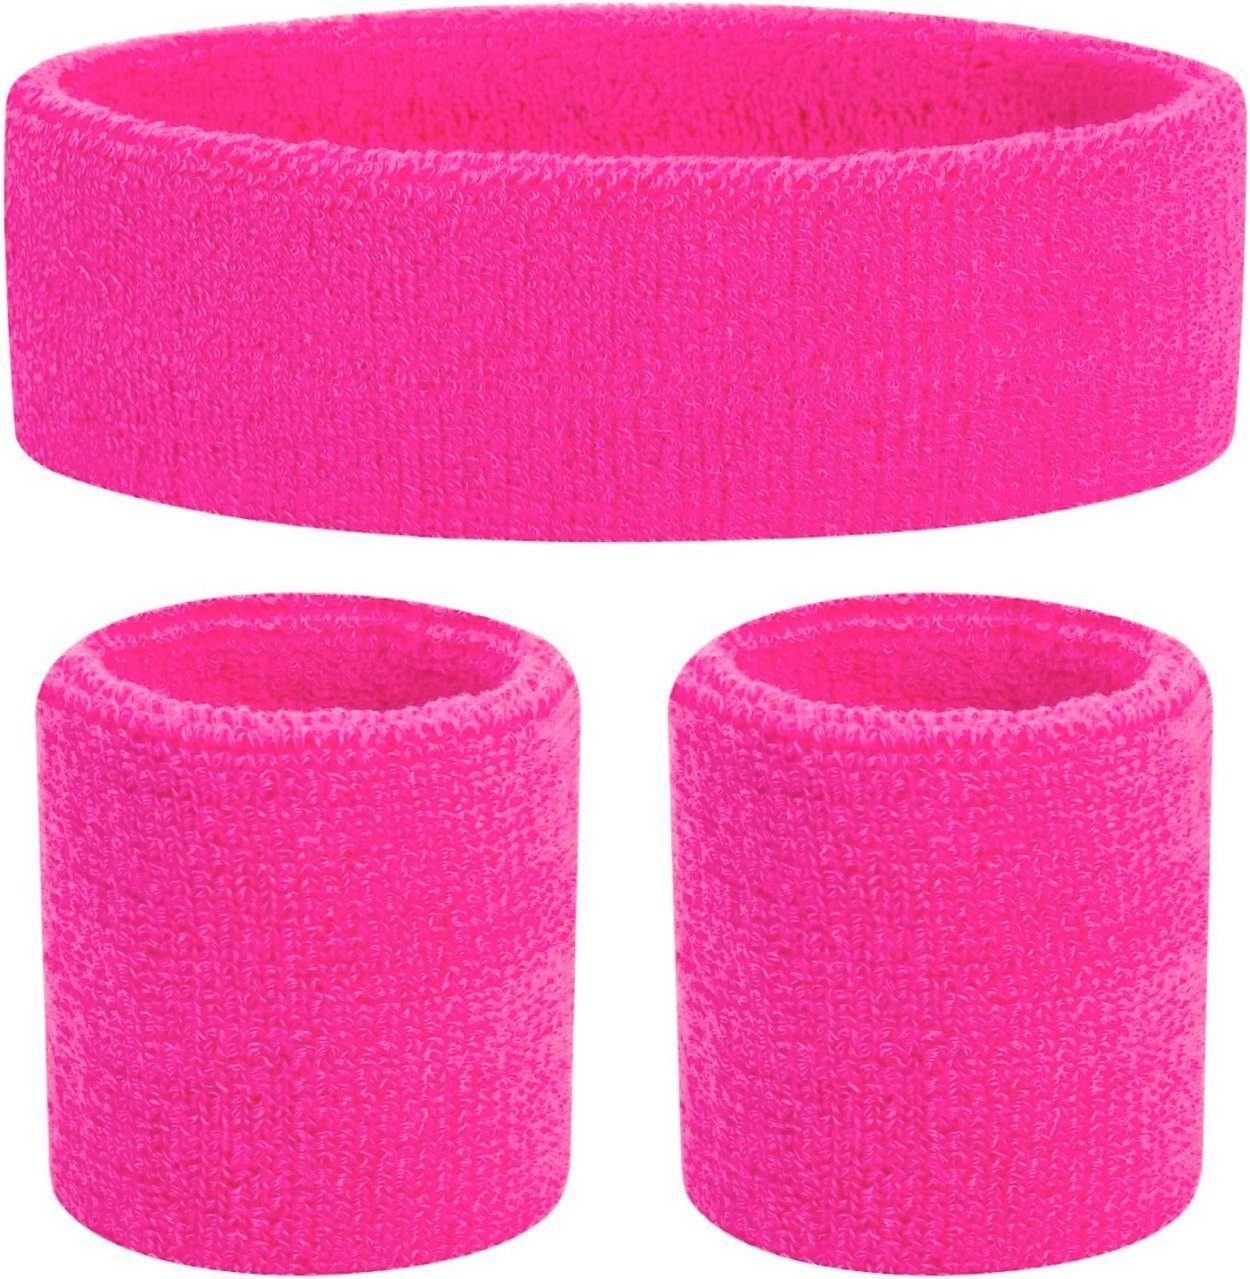 Kostümheld® Schweißband 2x 3 in 1 Schweißband Set pink - mit Stirnband - Retro Kostüm, Einheitsgröße